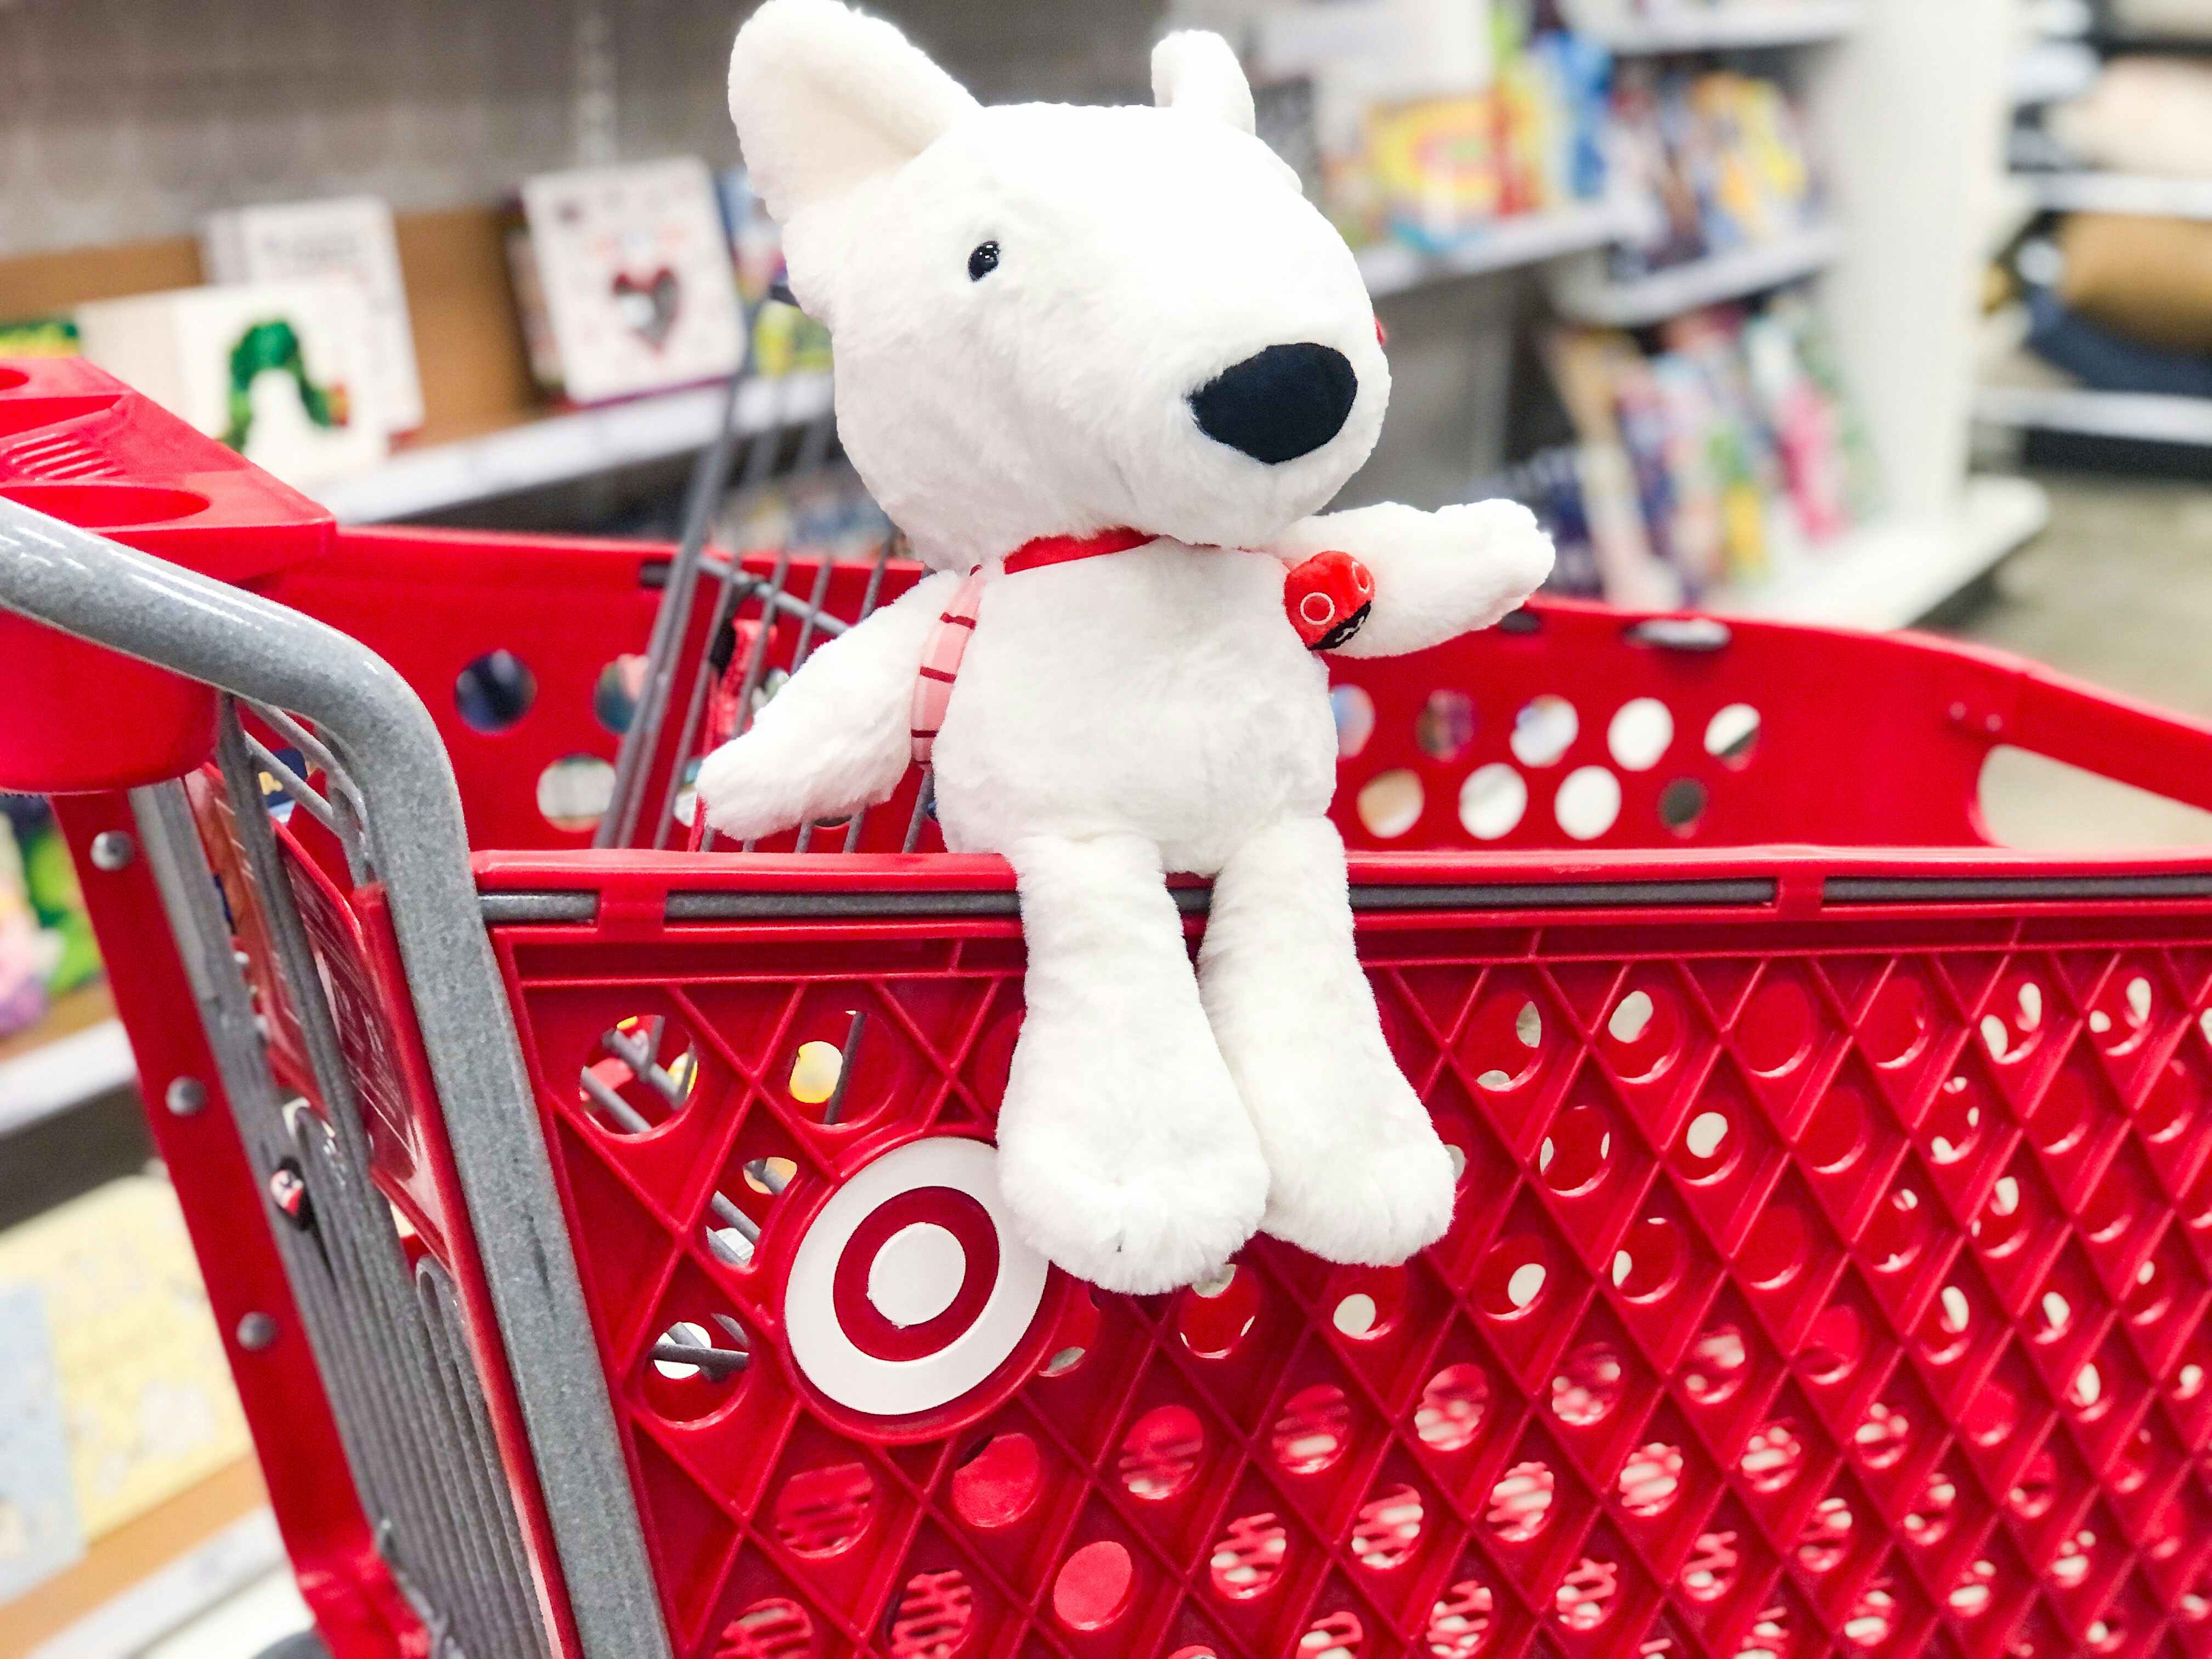 Target plush dog sitting on cart